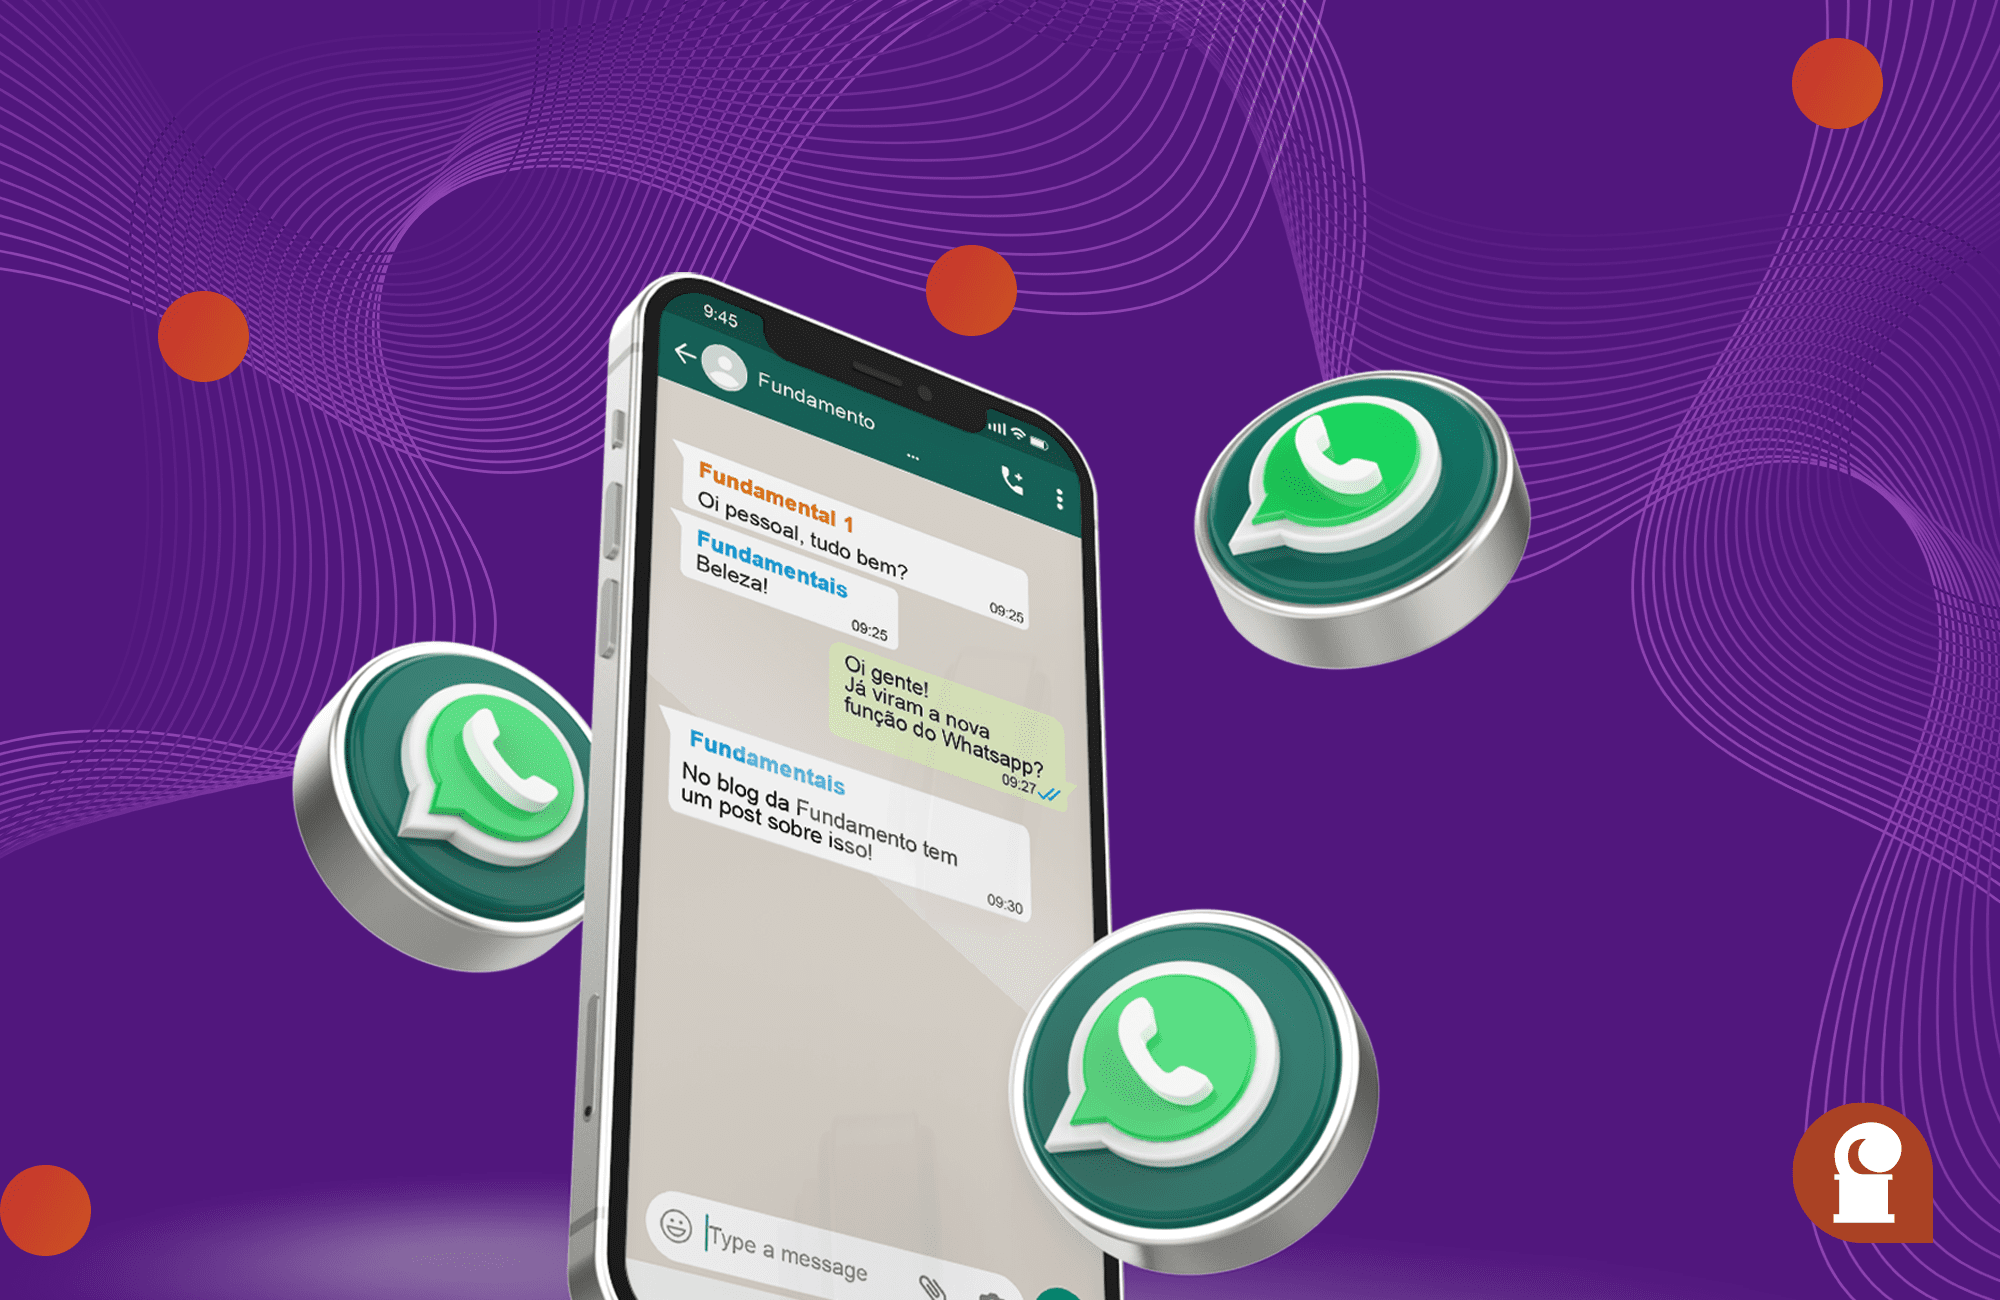 Conheça As Funcionalidades Do Whatsapp Comunidades Fundamento 7828